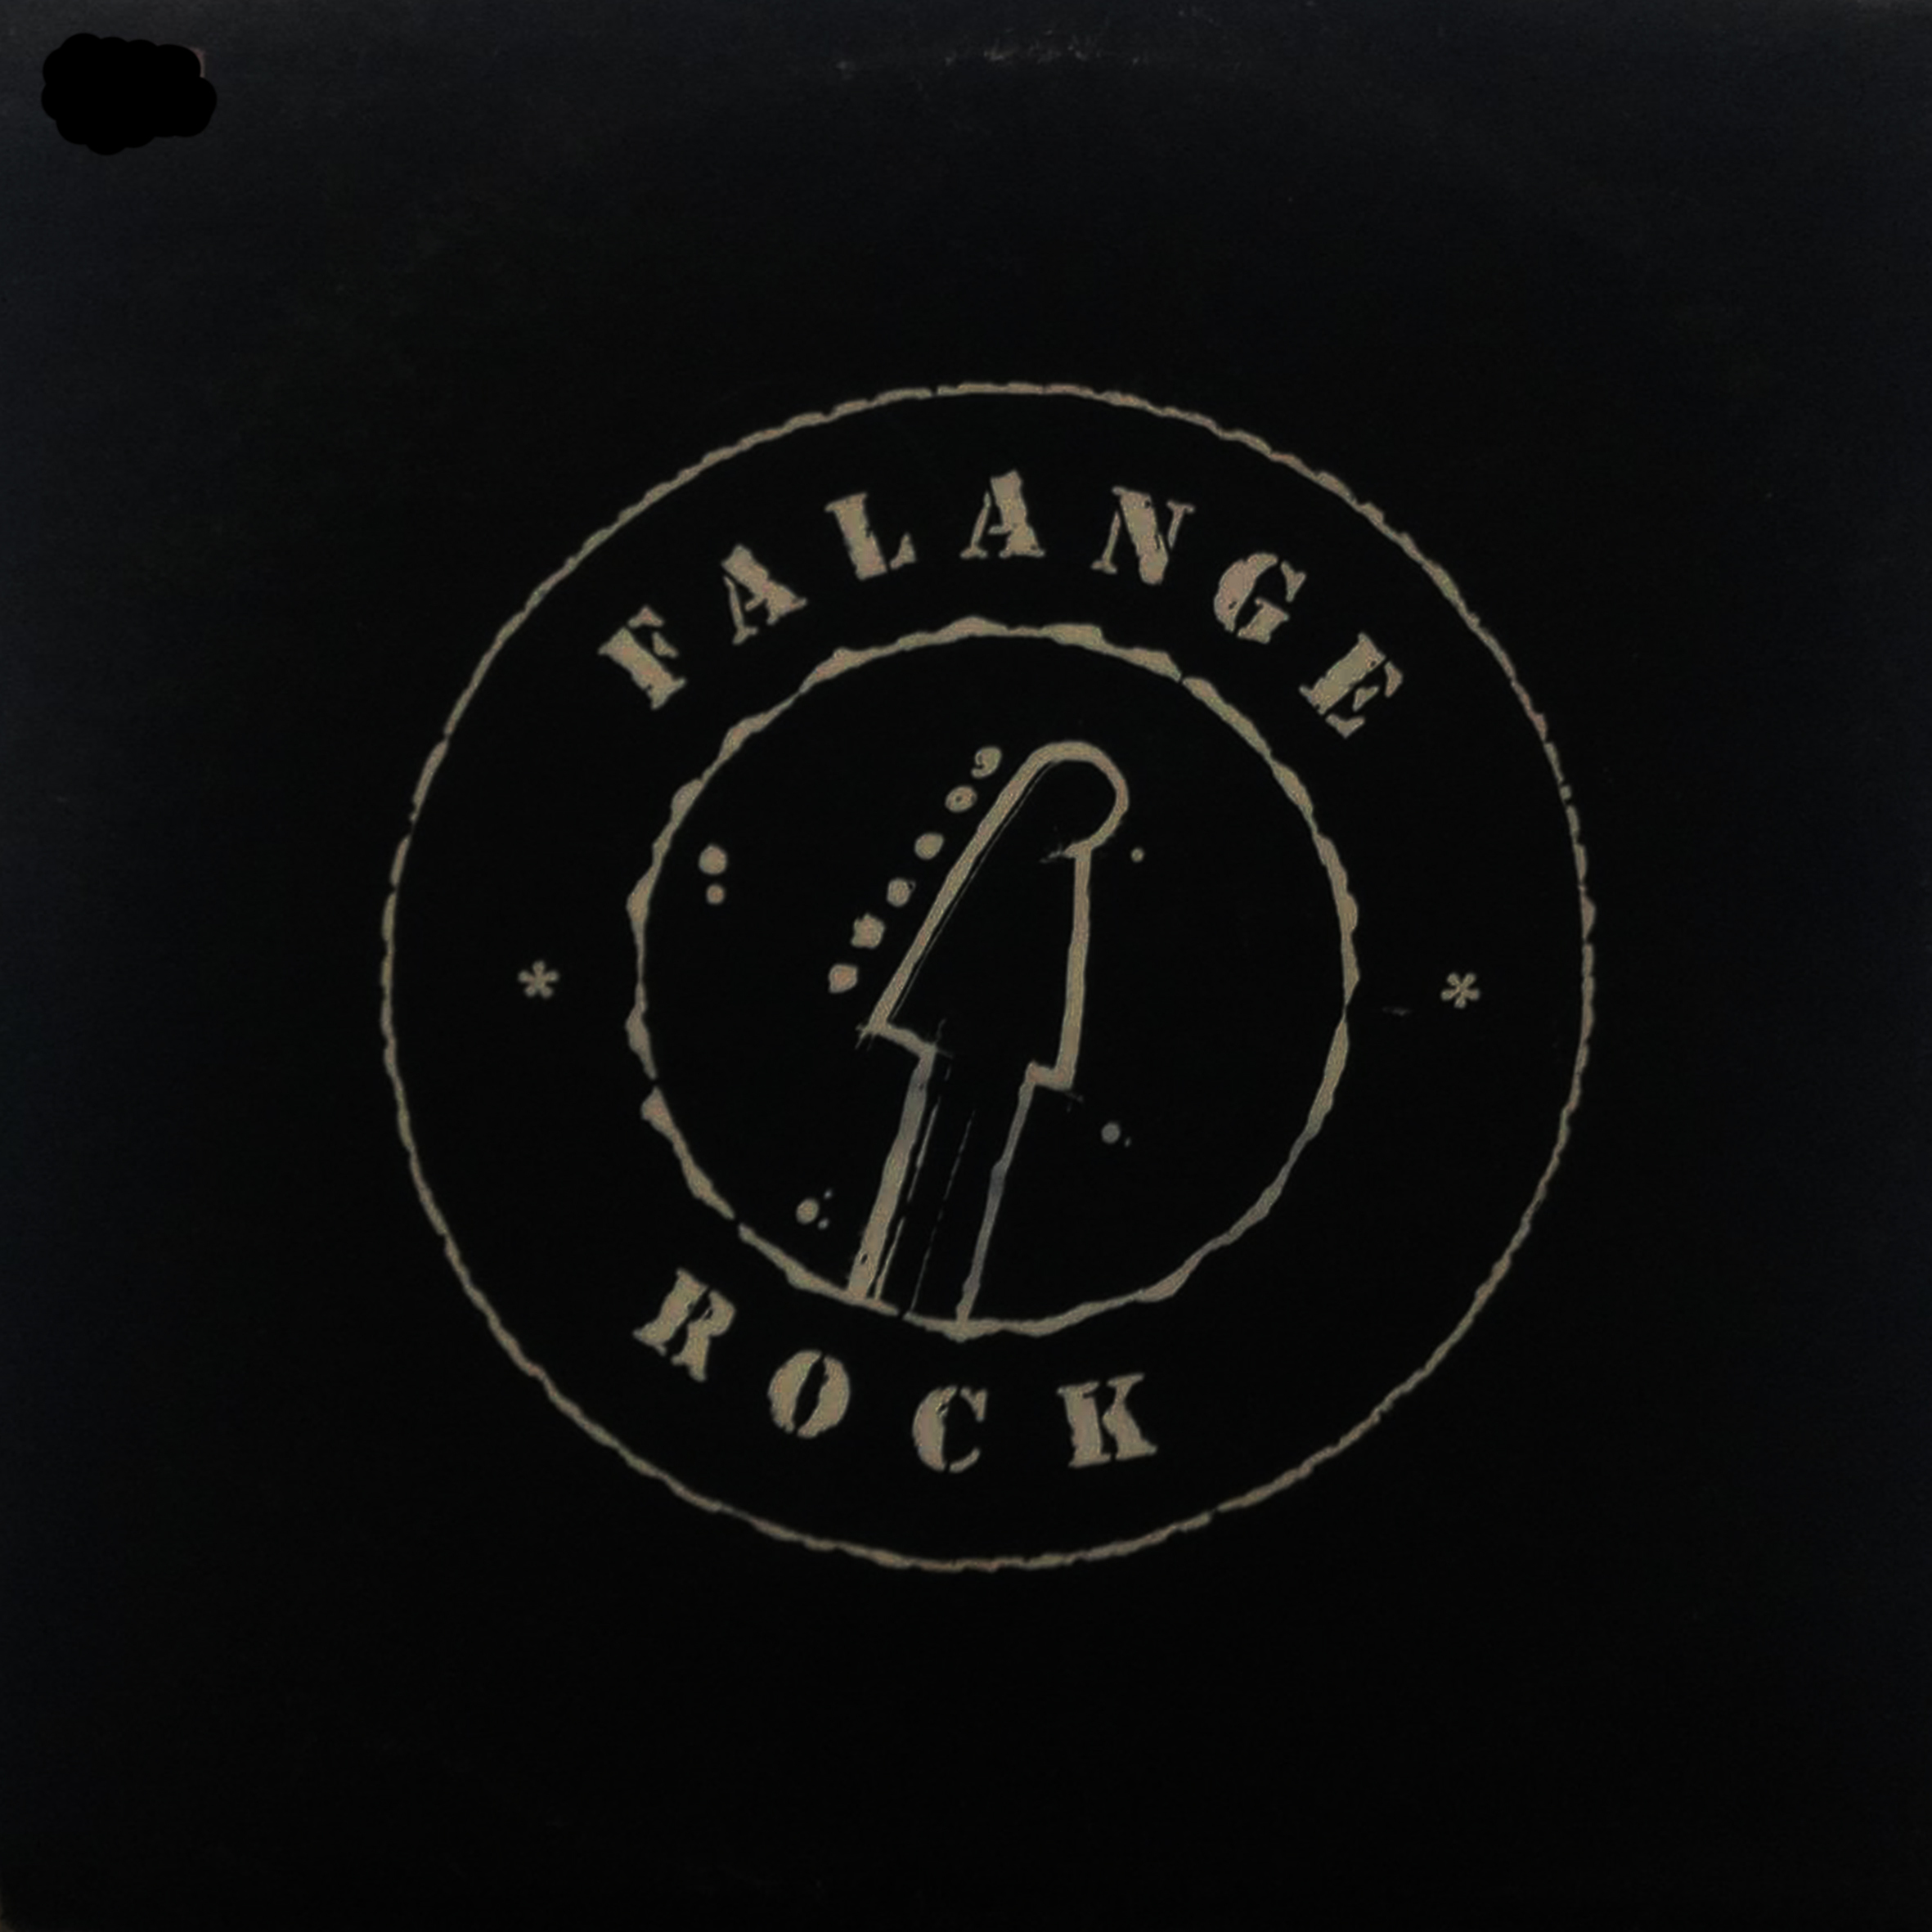 Vinil - Falange Rock - Split 1993 (autografado)